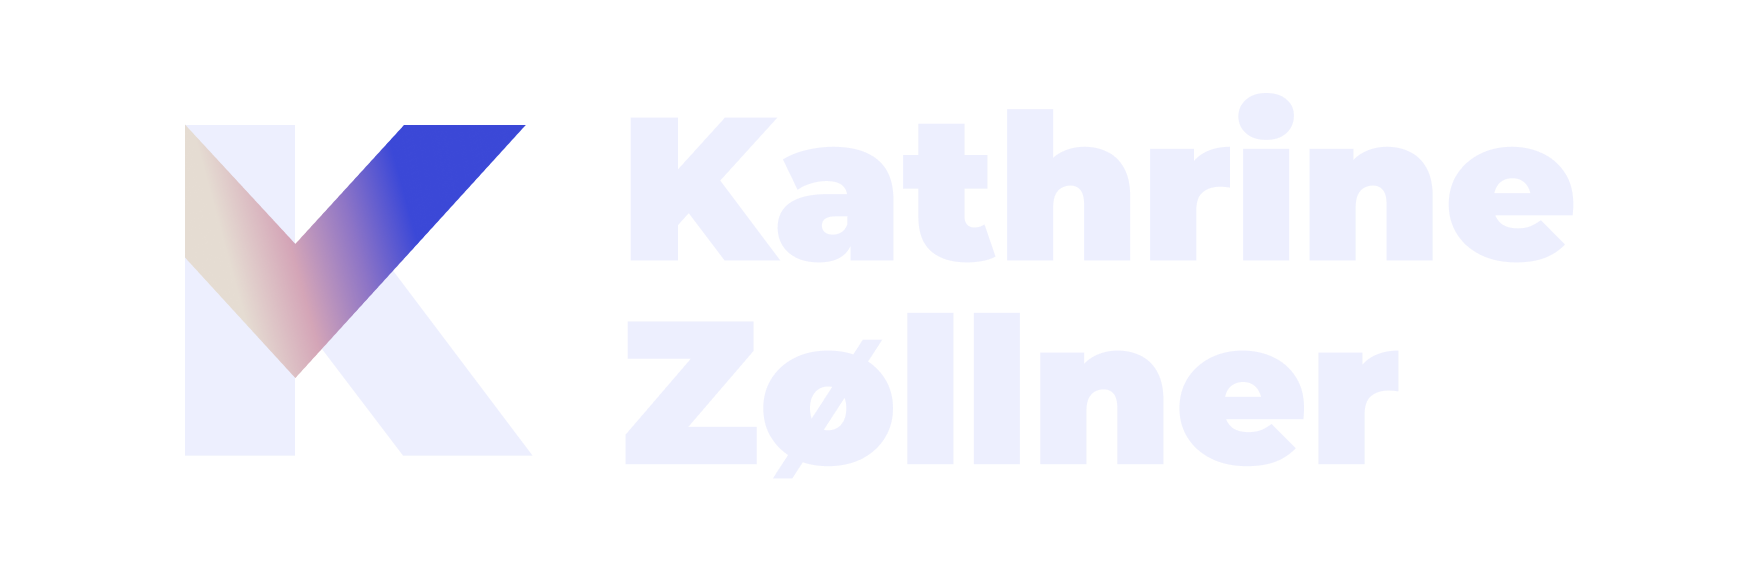 Kathrine Zøllner - Konverteringsoptimering og UX-specialist logo